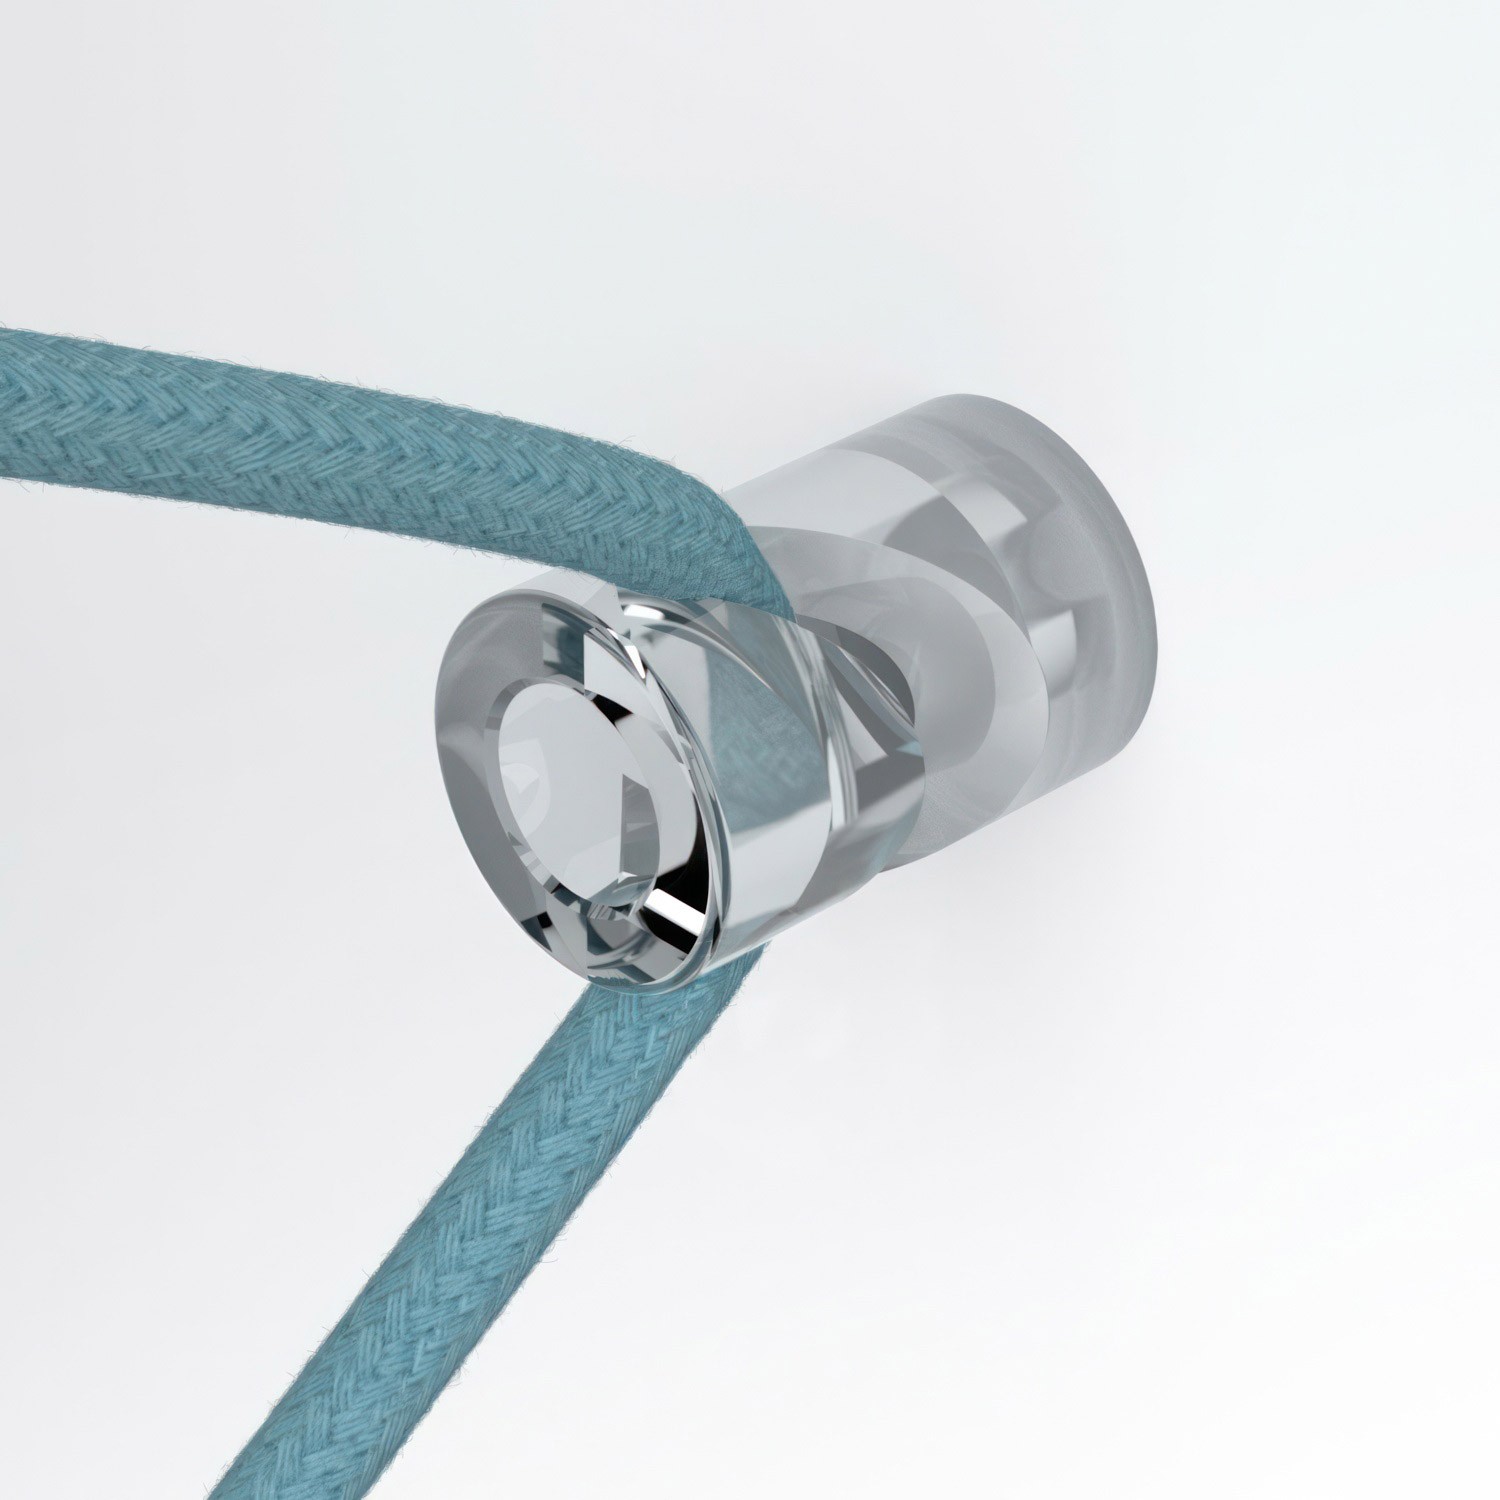 Decentralizér, stropný alebo nástenný "V" háčik pre textilné elektrické káble.